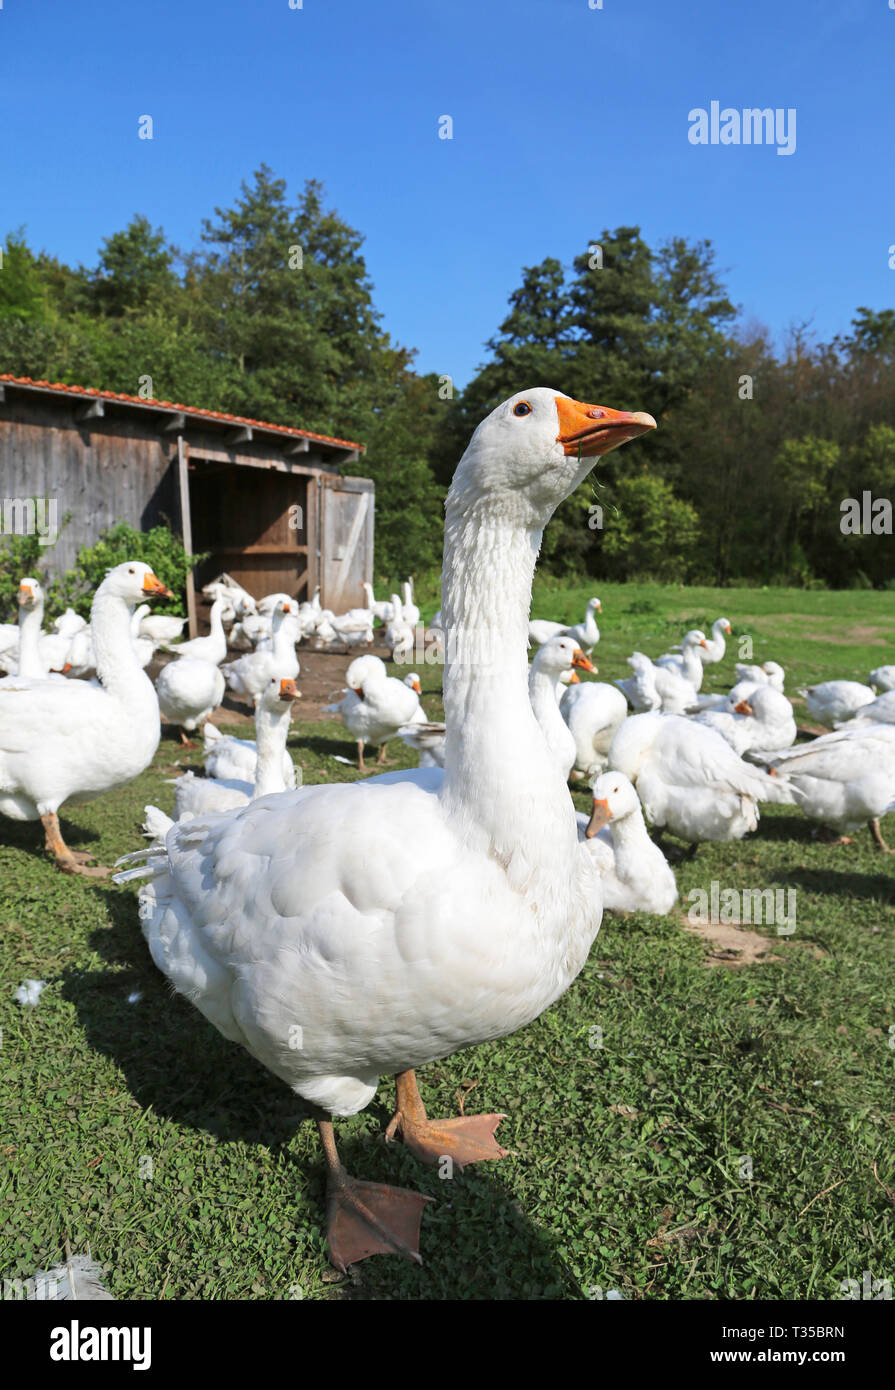 Les oies blanches dans une ferme Banque D'Images